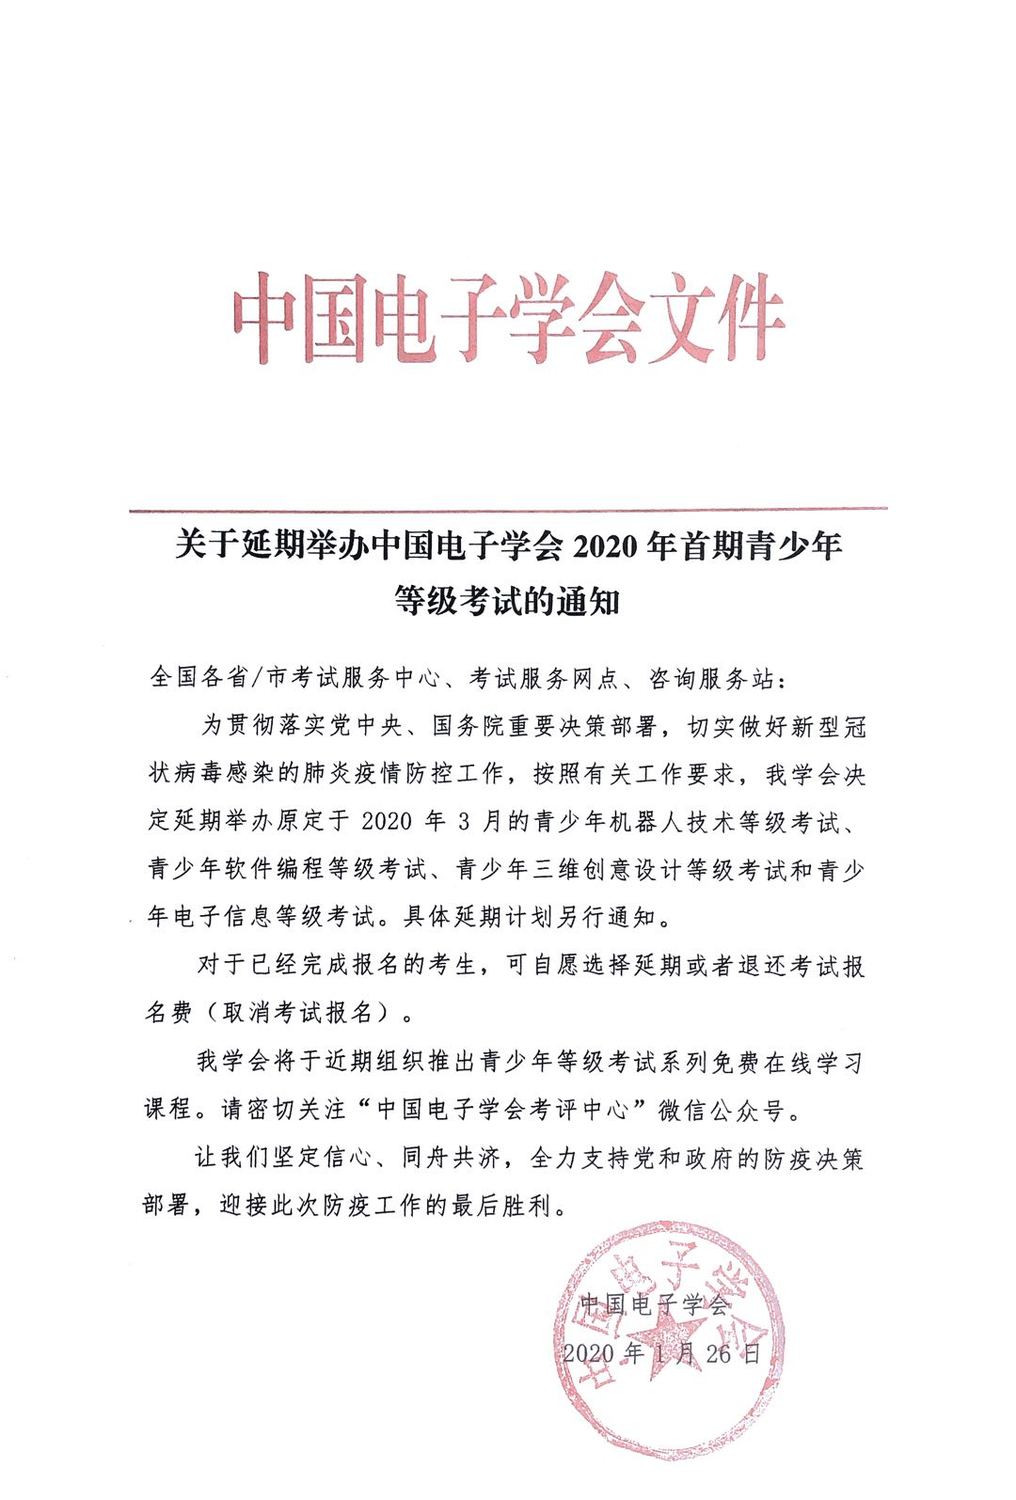 关于延期举办中国电子学会2020年首期青少年等级考试的通知.jpg